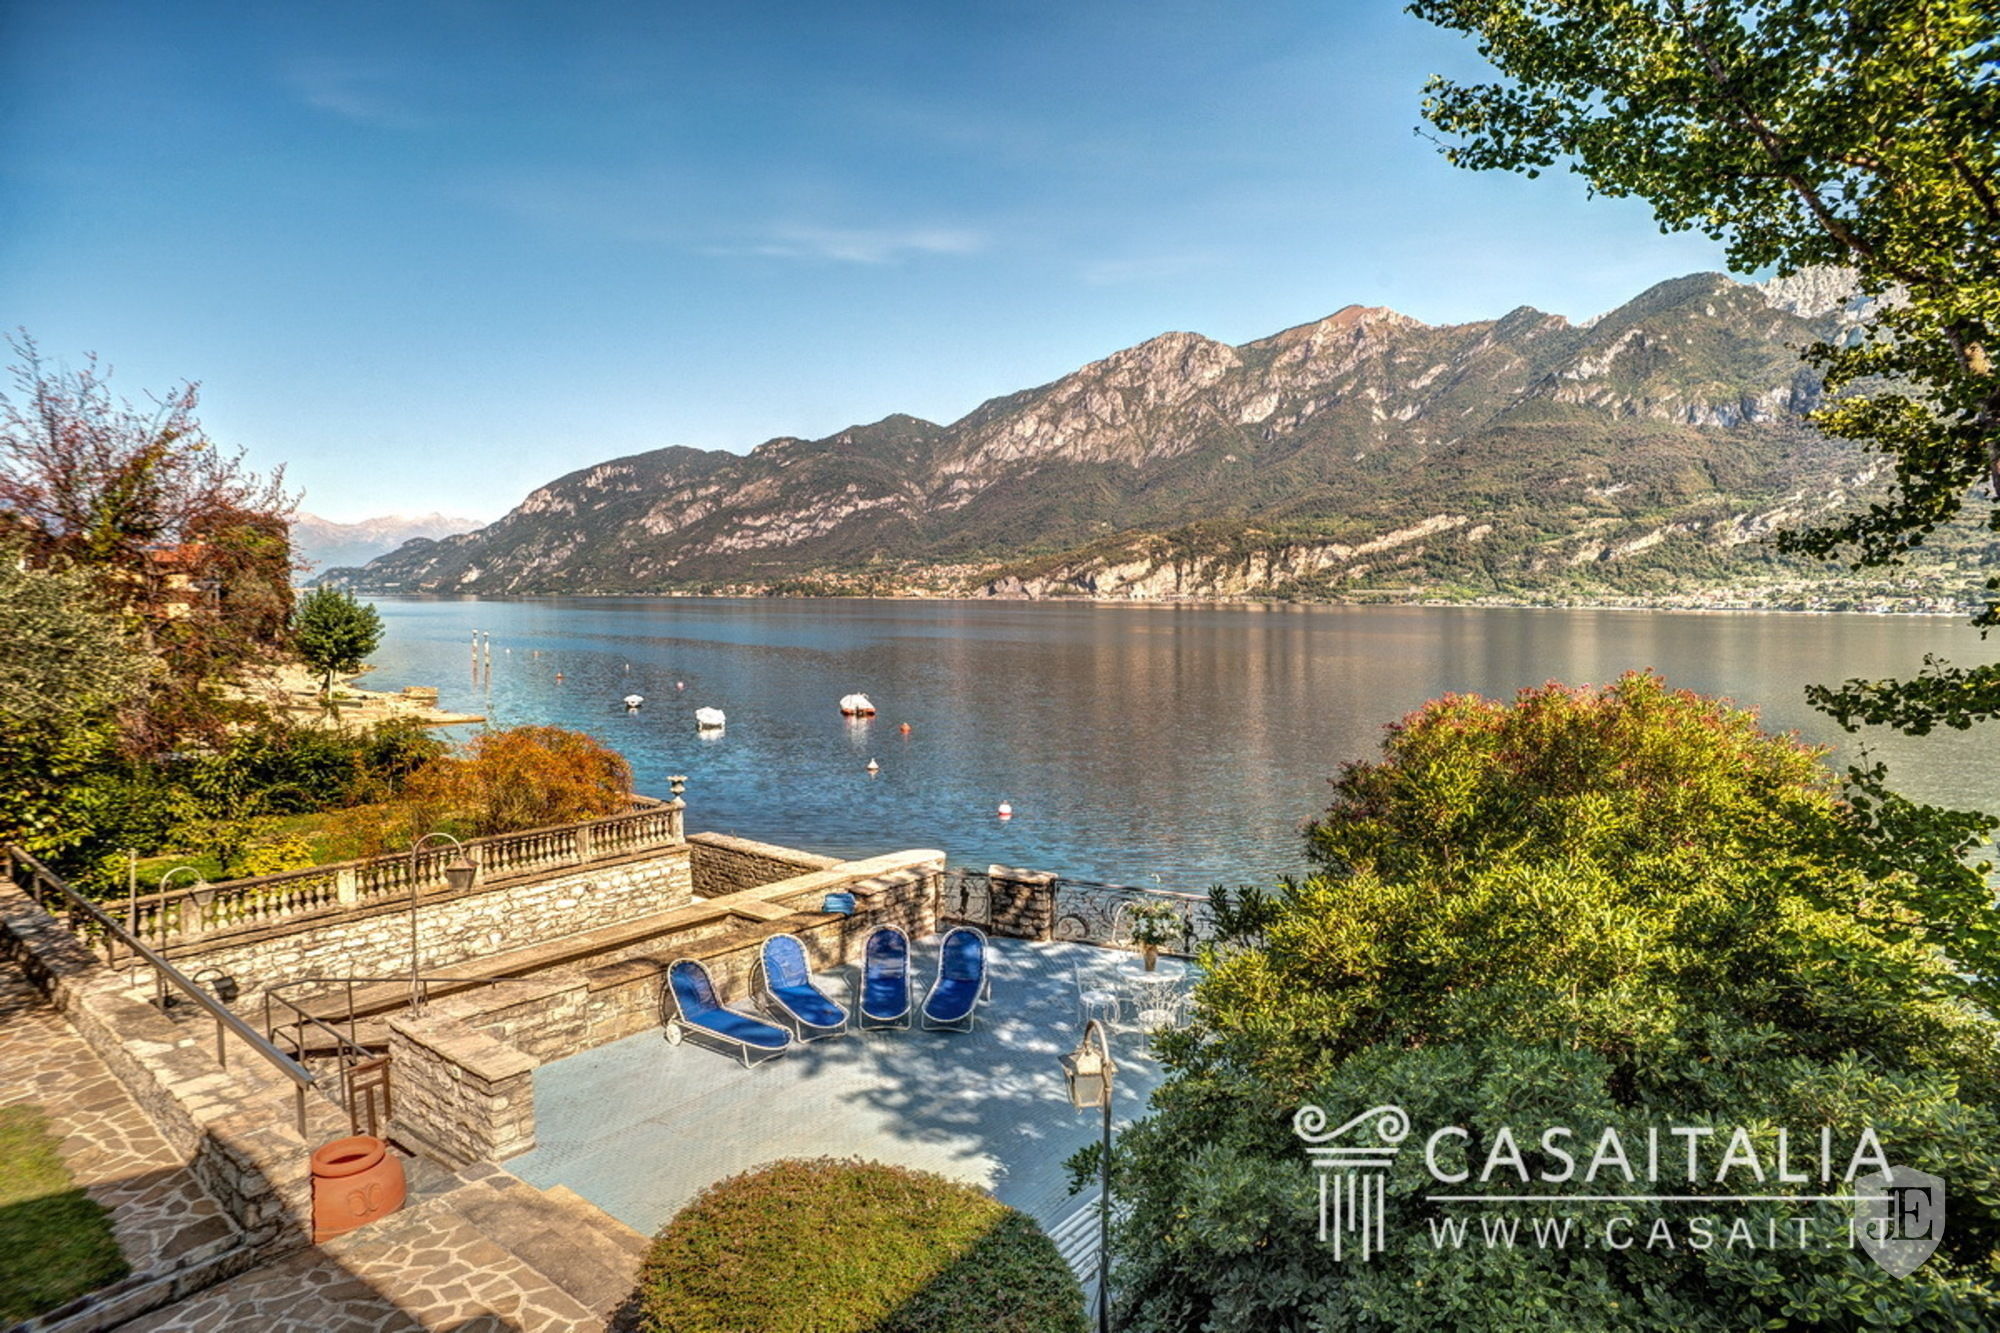 Villa with dock on Lake Como - GV7K in Oliveto Lario Italy for sale ...